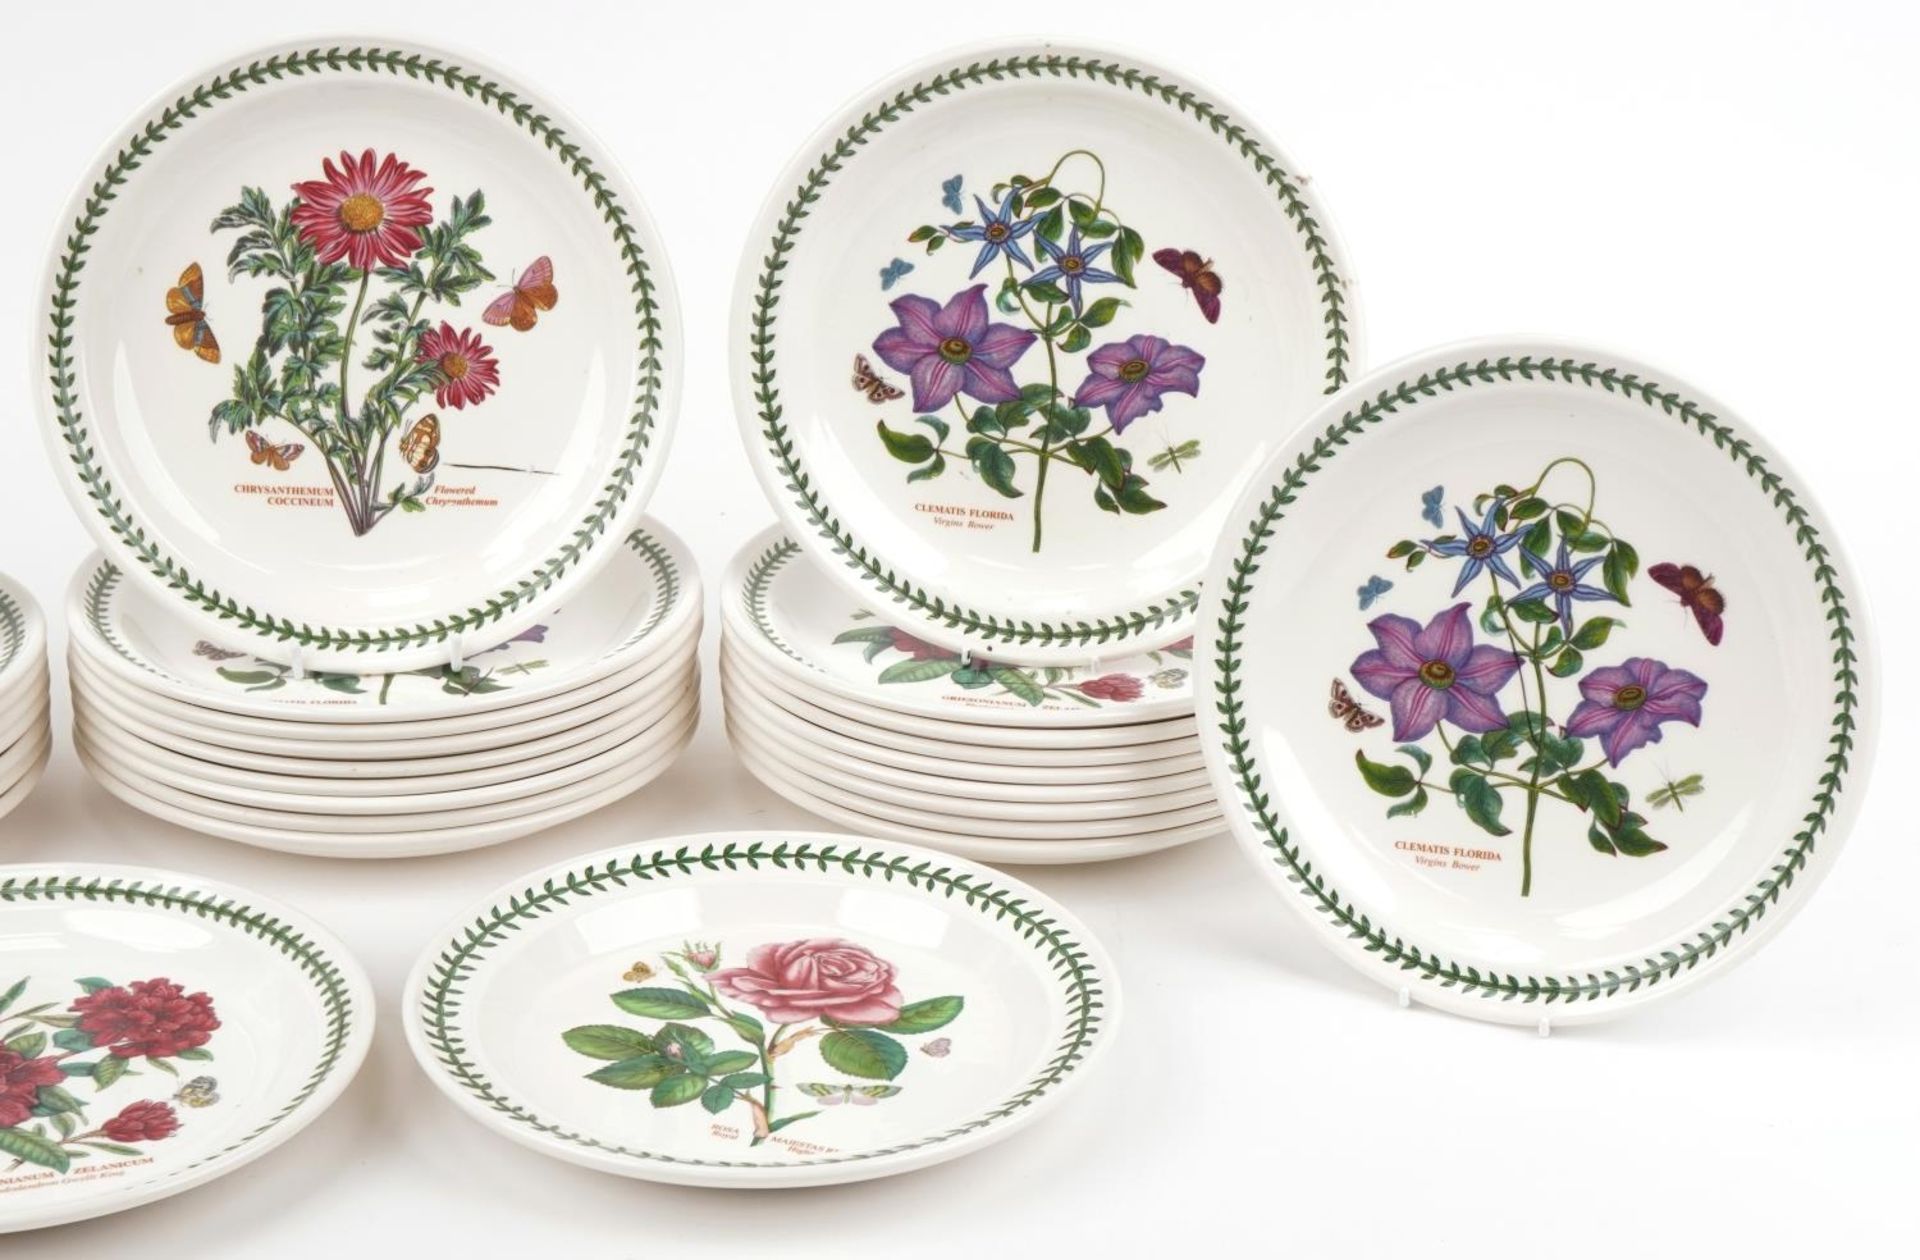 Thirty Portmeirion Botanic Garden dinner plates, 27cm in diameter - Image 5 of 8